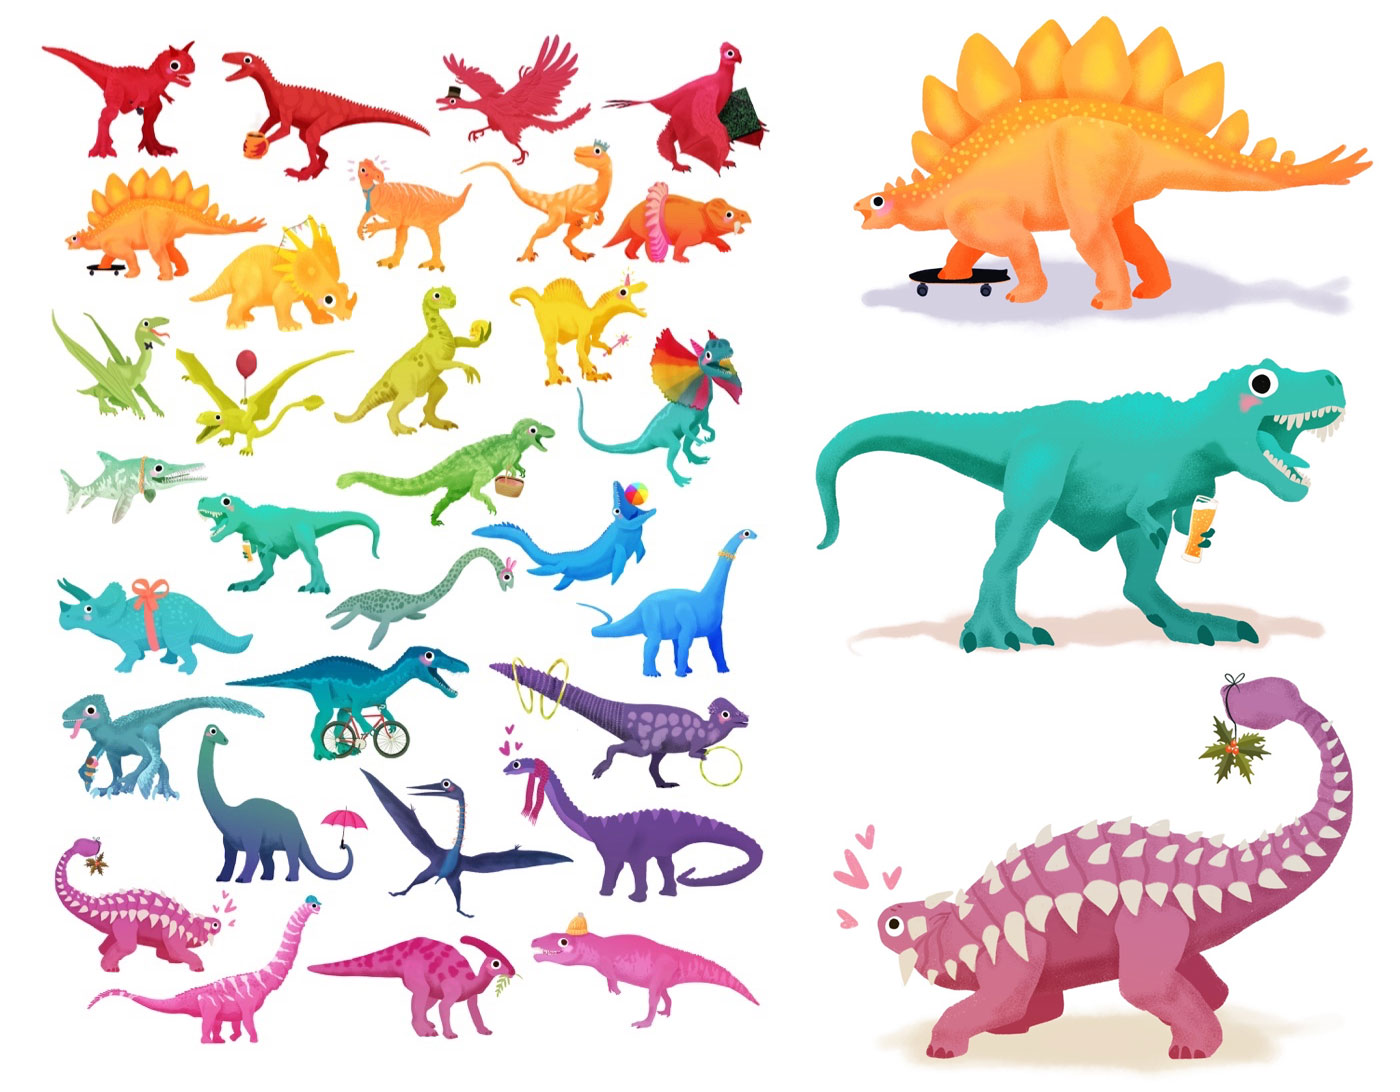 Les dinosaures colorés dessinés lors de dinoctober